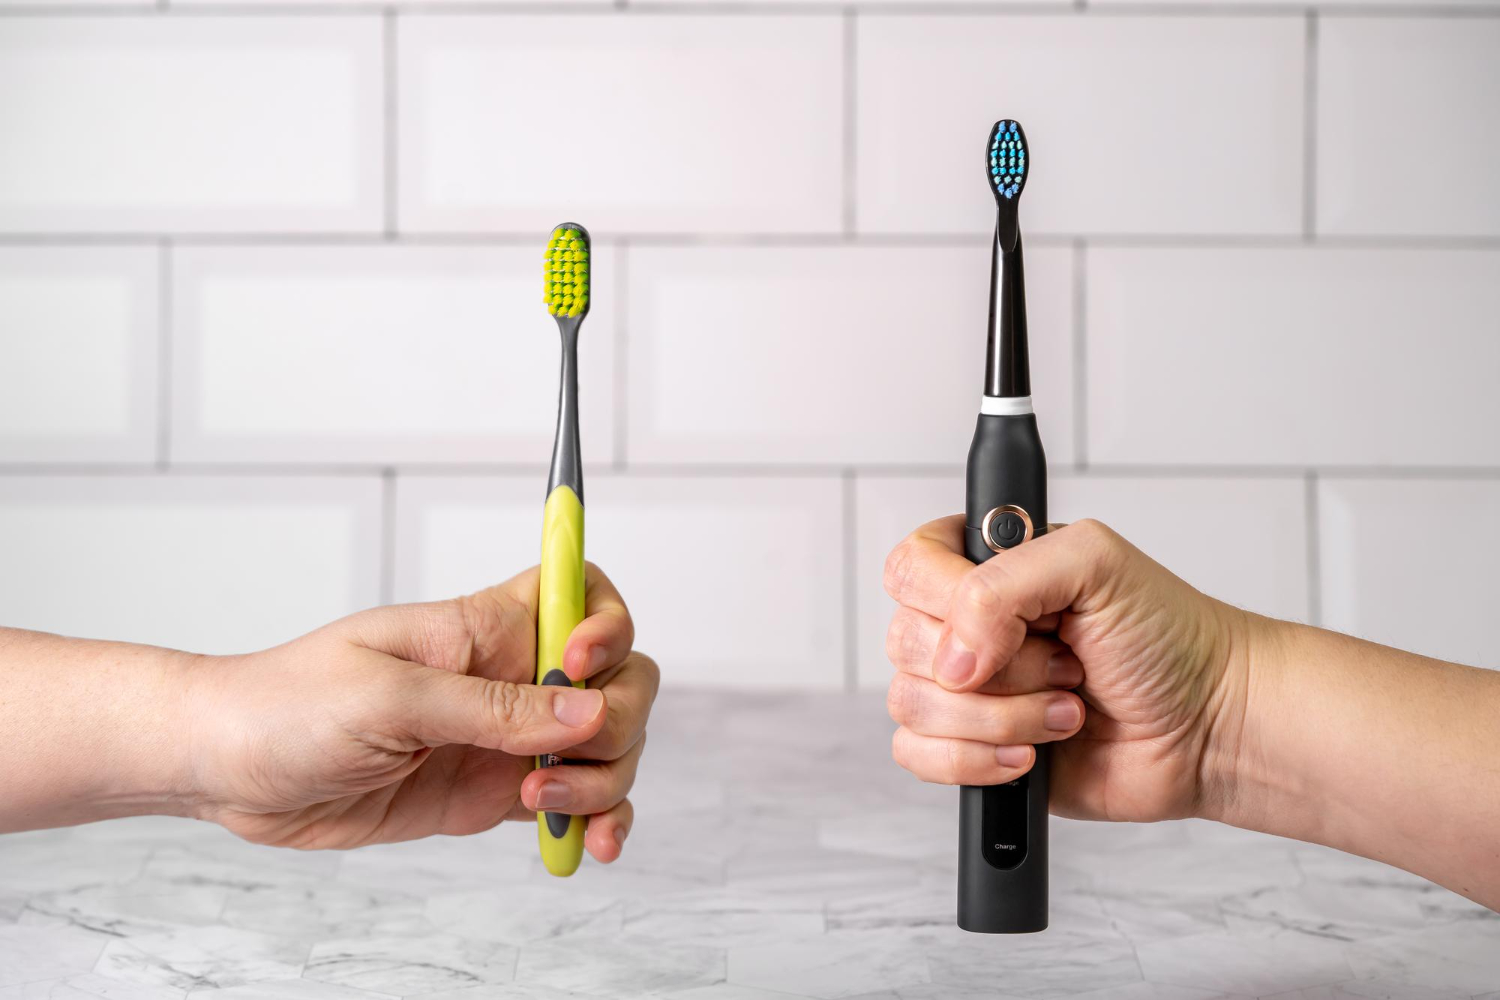 Cepillos de dientes: ¿dudas entre elegir uno manual o uno eléctrico?